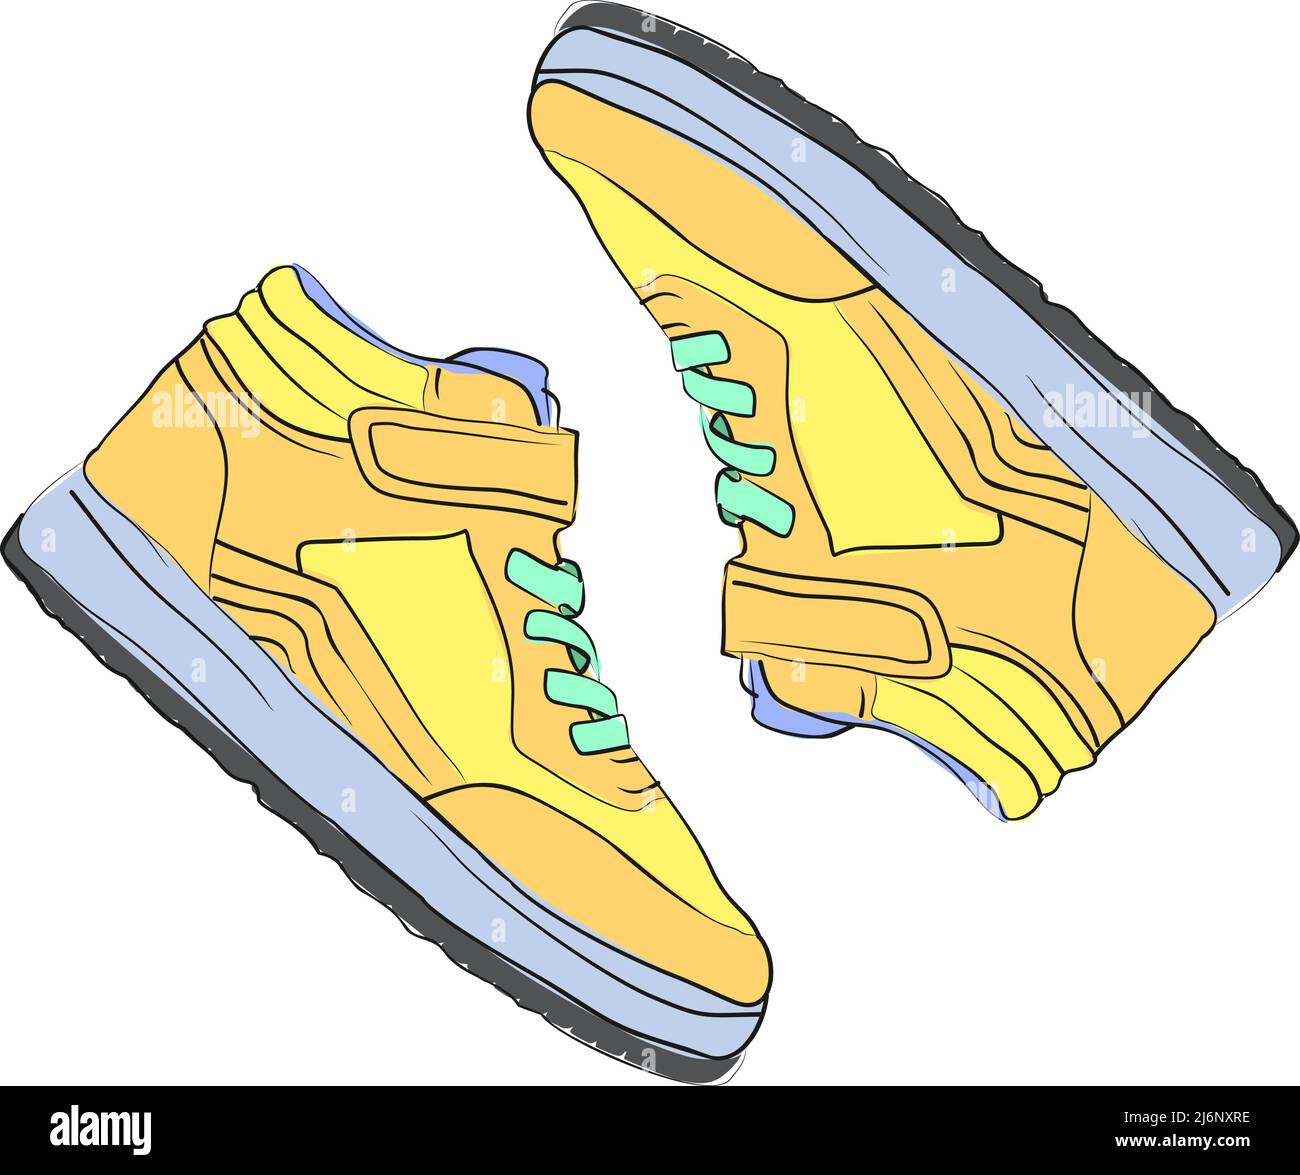 Sneakers illustrazioni con nuove sneakers di moda dai colori giallognoli,  sneaker con vista dall'alto, design piatto, scarpe da disegno colorate  gialle Immagine e Vettoriale - Alamy